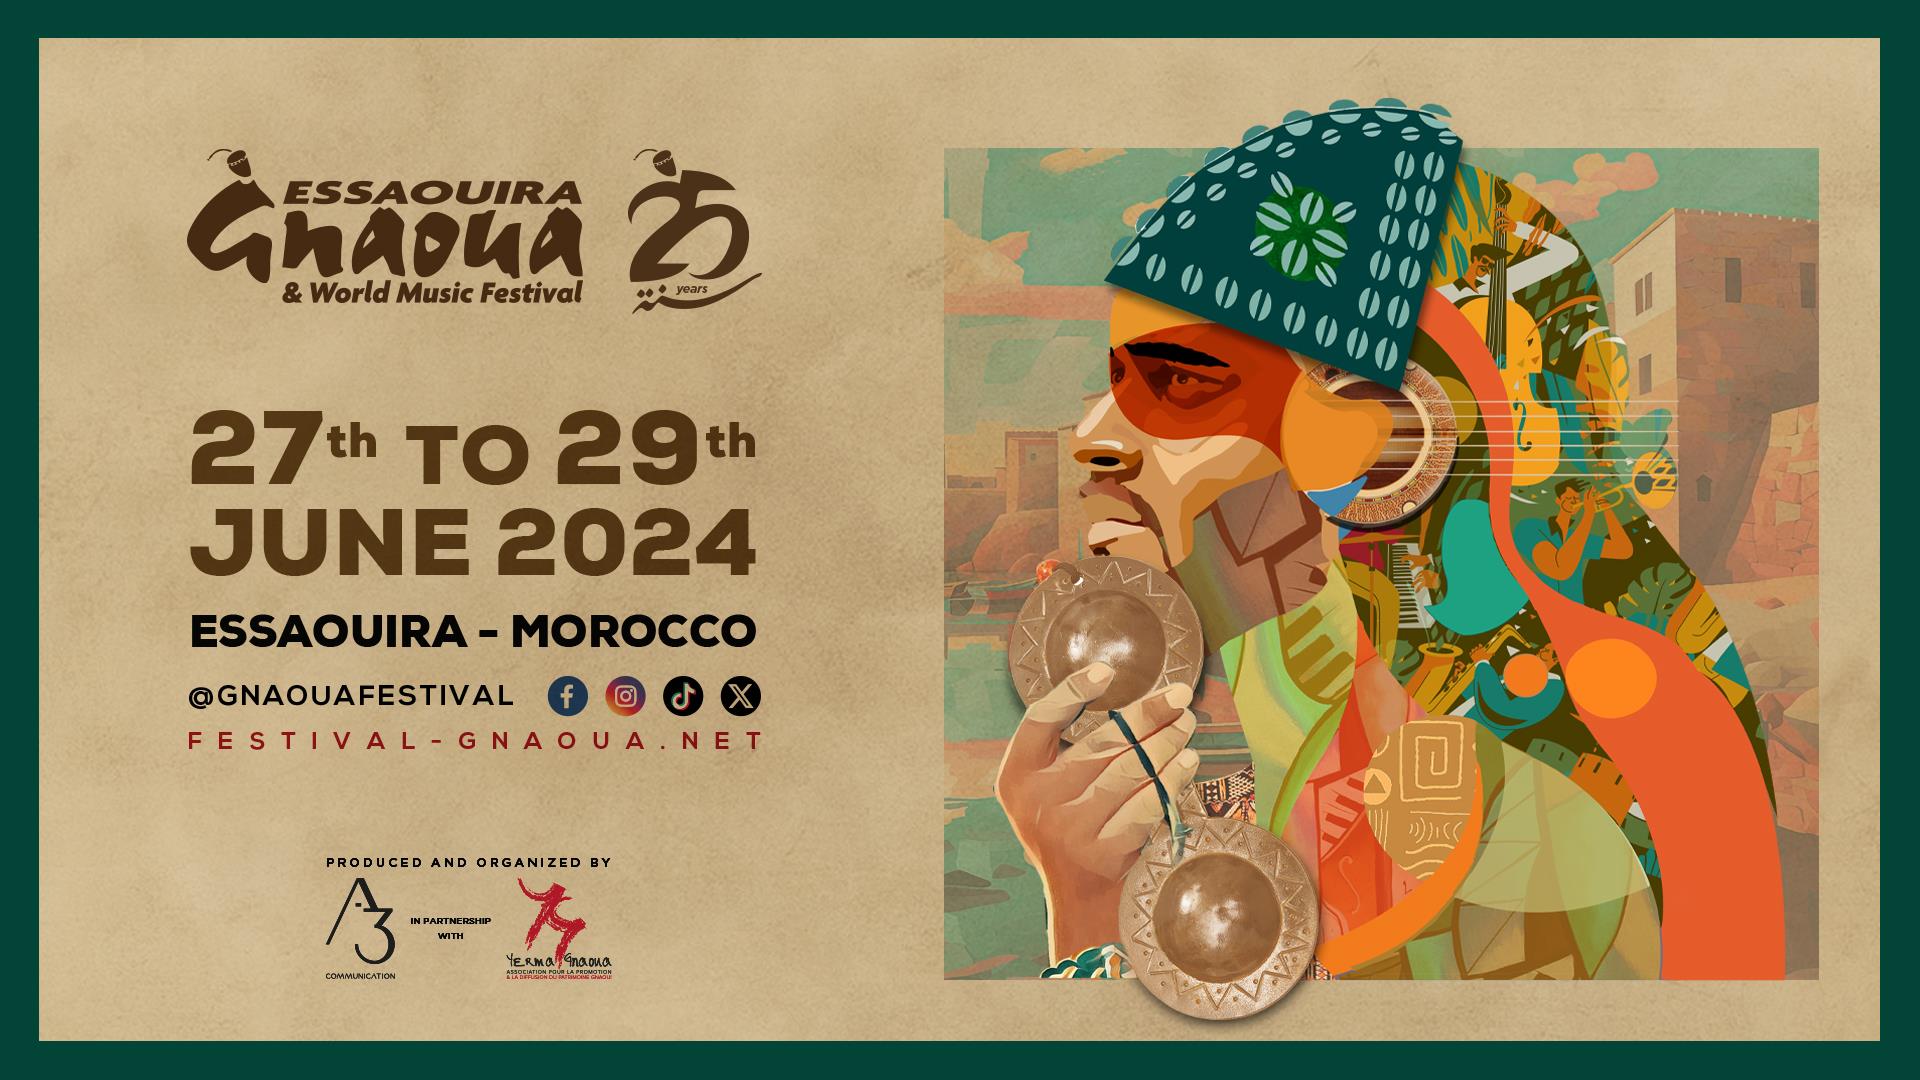 25e Festival Gnaoua d'Essaouira: instrumentistes virtuoses et shows scéniques à l’affiche (organisateurs)

